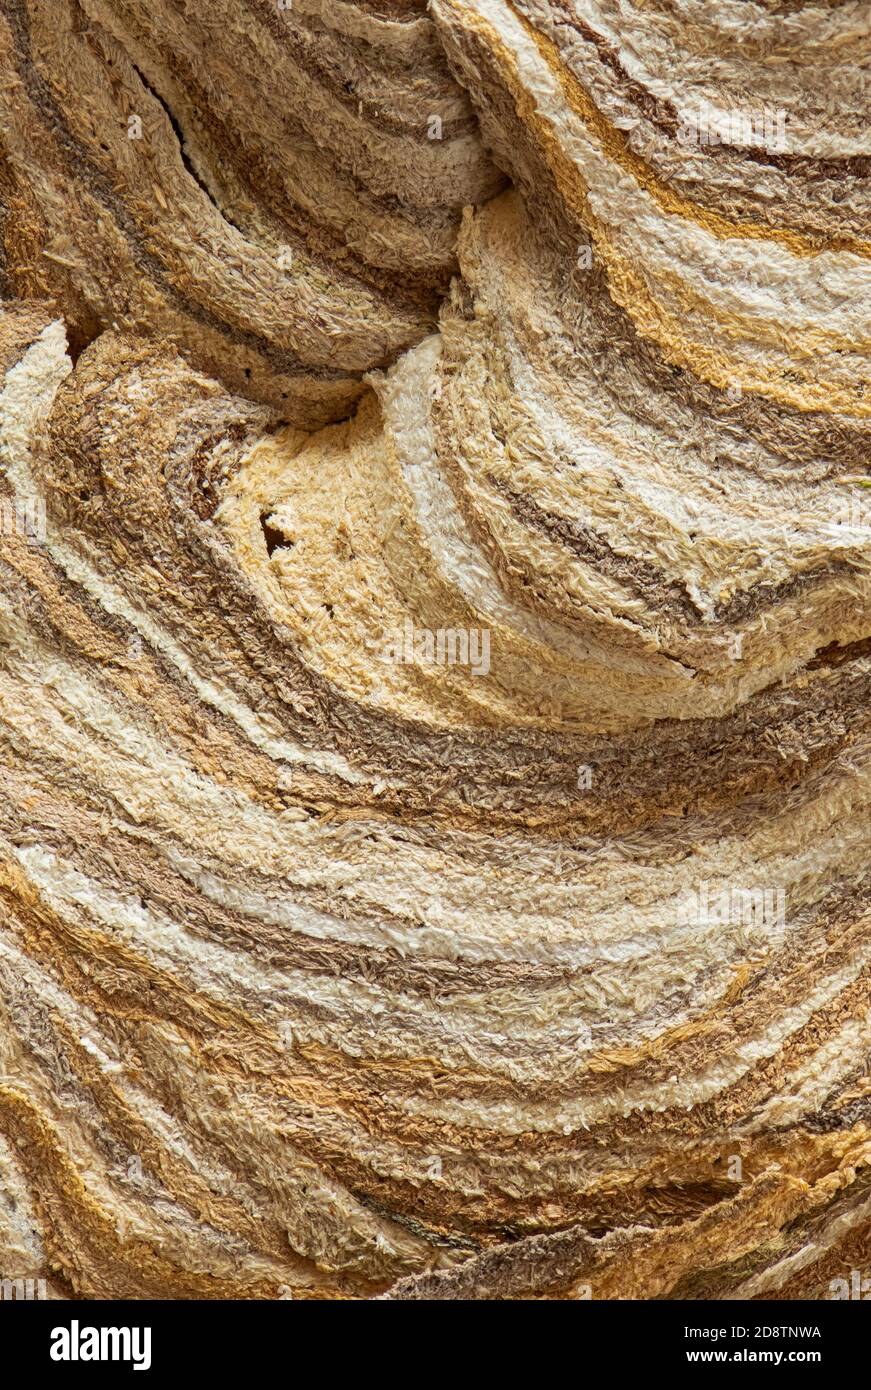 WASP NEST primo piano dettaglio del nido di carta che mostra il fibra di legno rotta che è stata mescolata con saliva per creare pasta di carta morbida Foto Stock